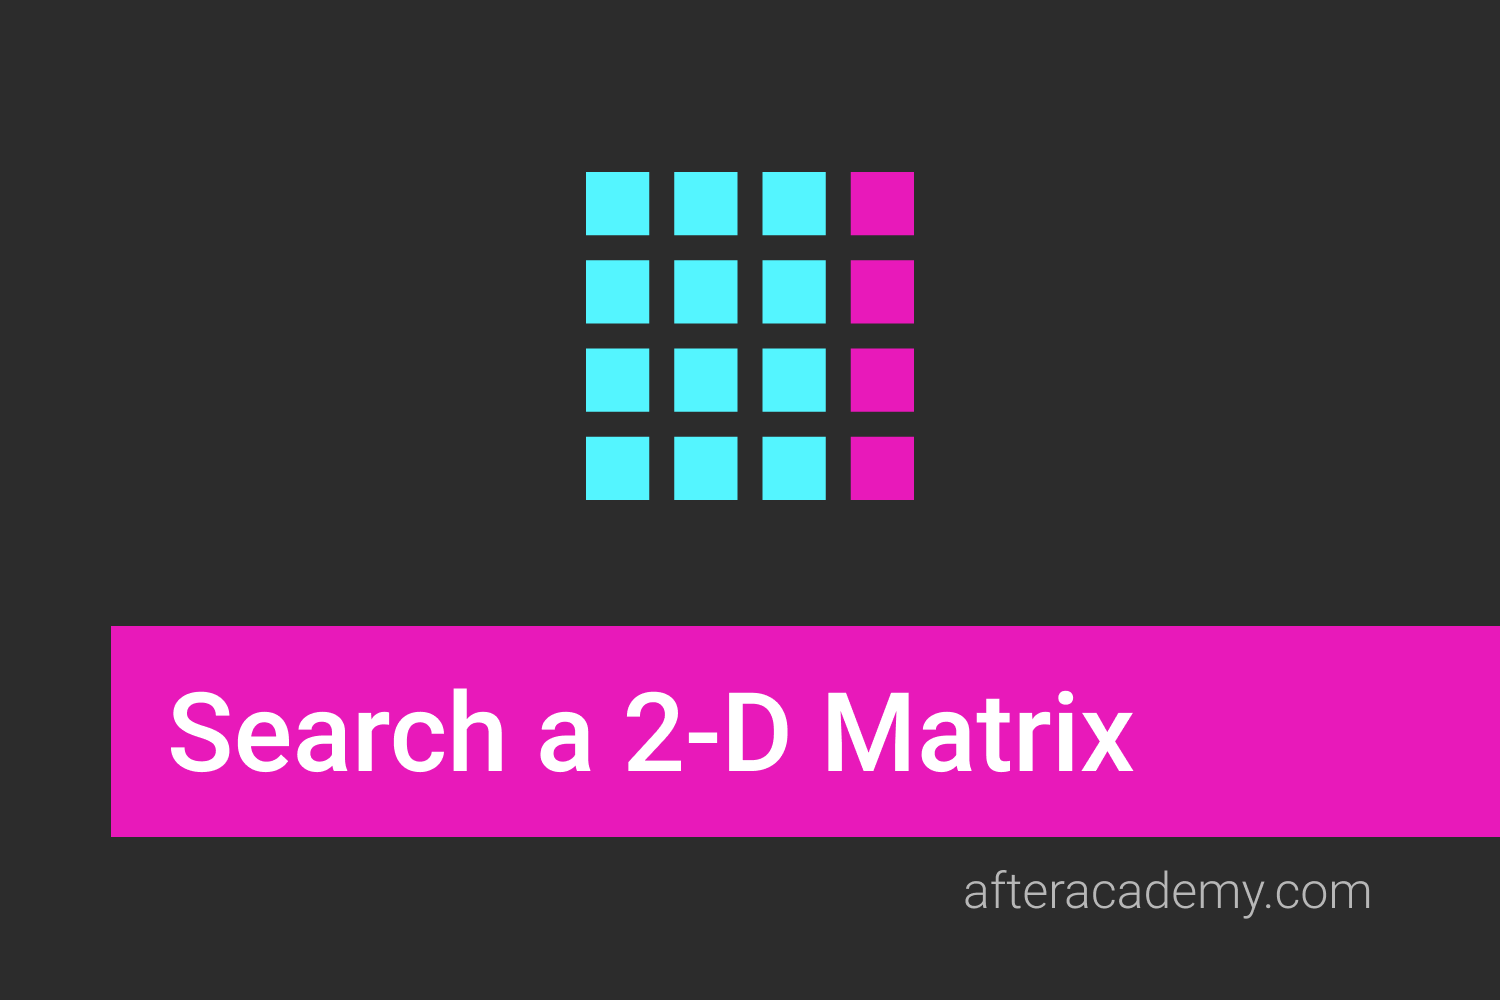 Search in a 2-D Matrix